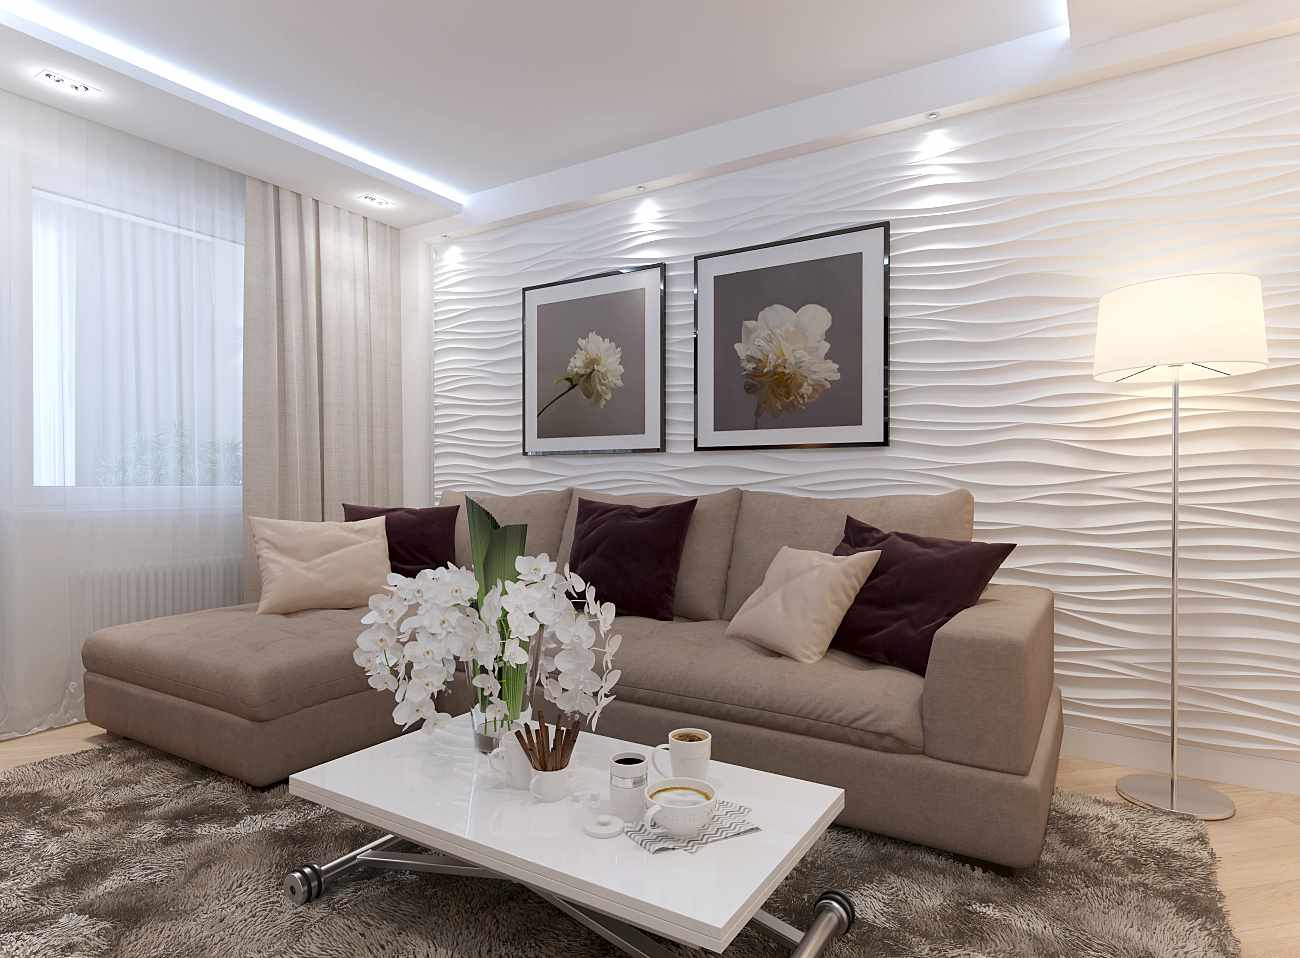 La idea de una decoración luminosa de una sala de estar de 19-20 m2.